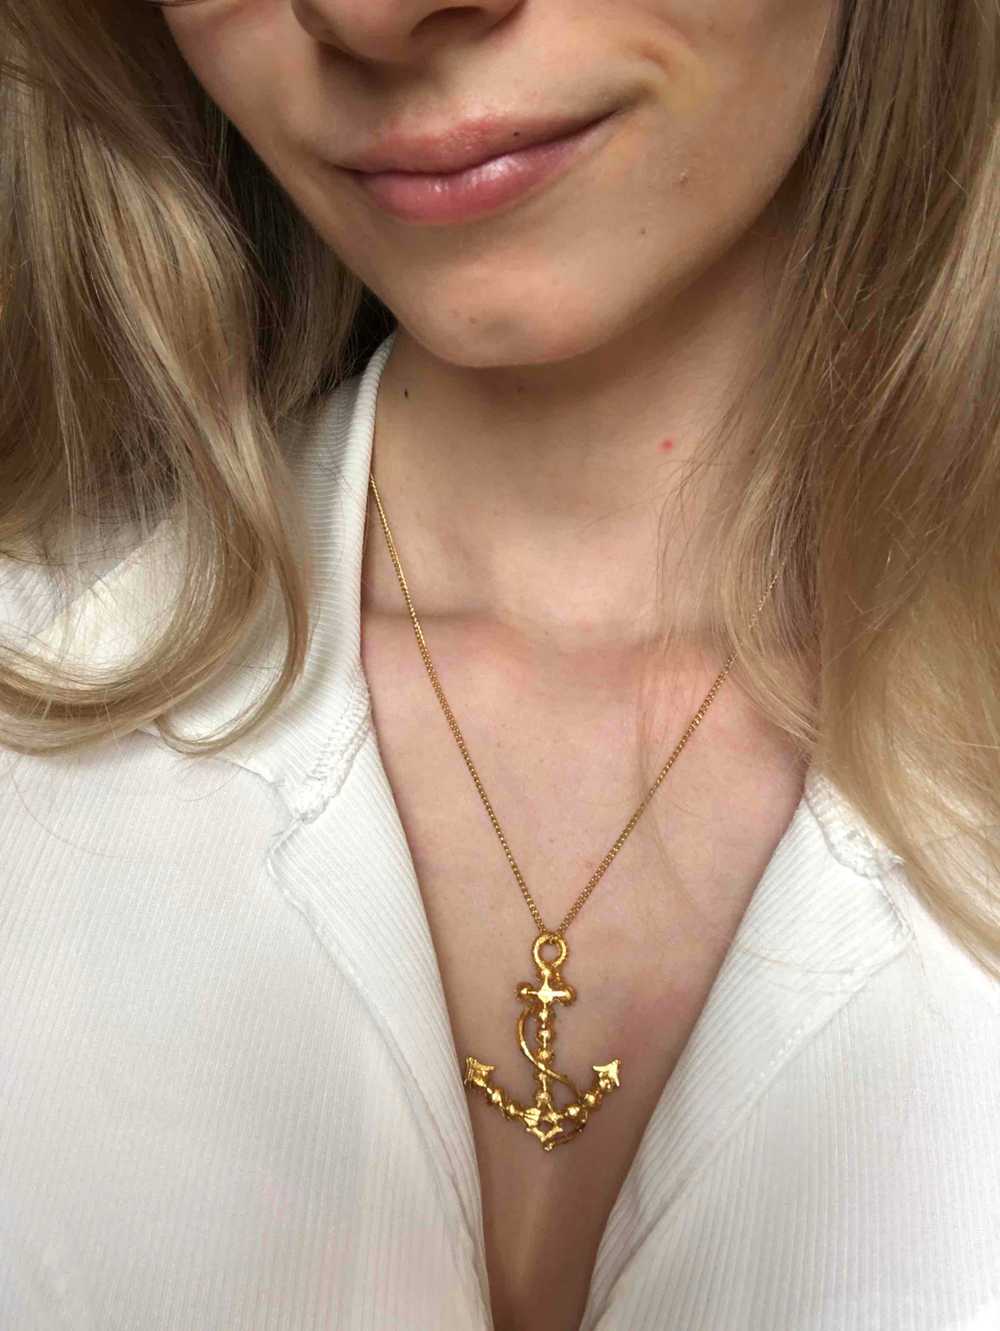 Golden metal necklace - Golden metal necklace wit… - image 5